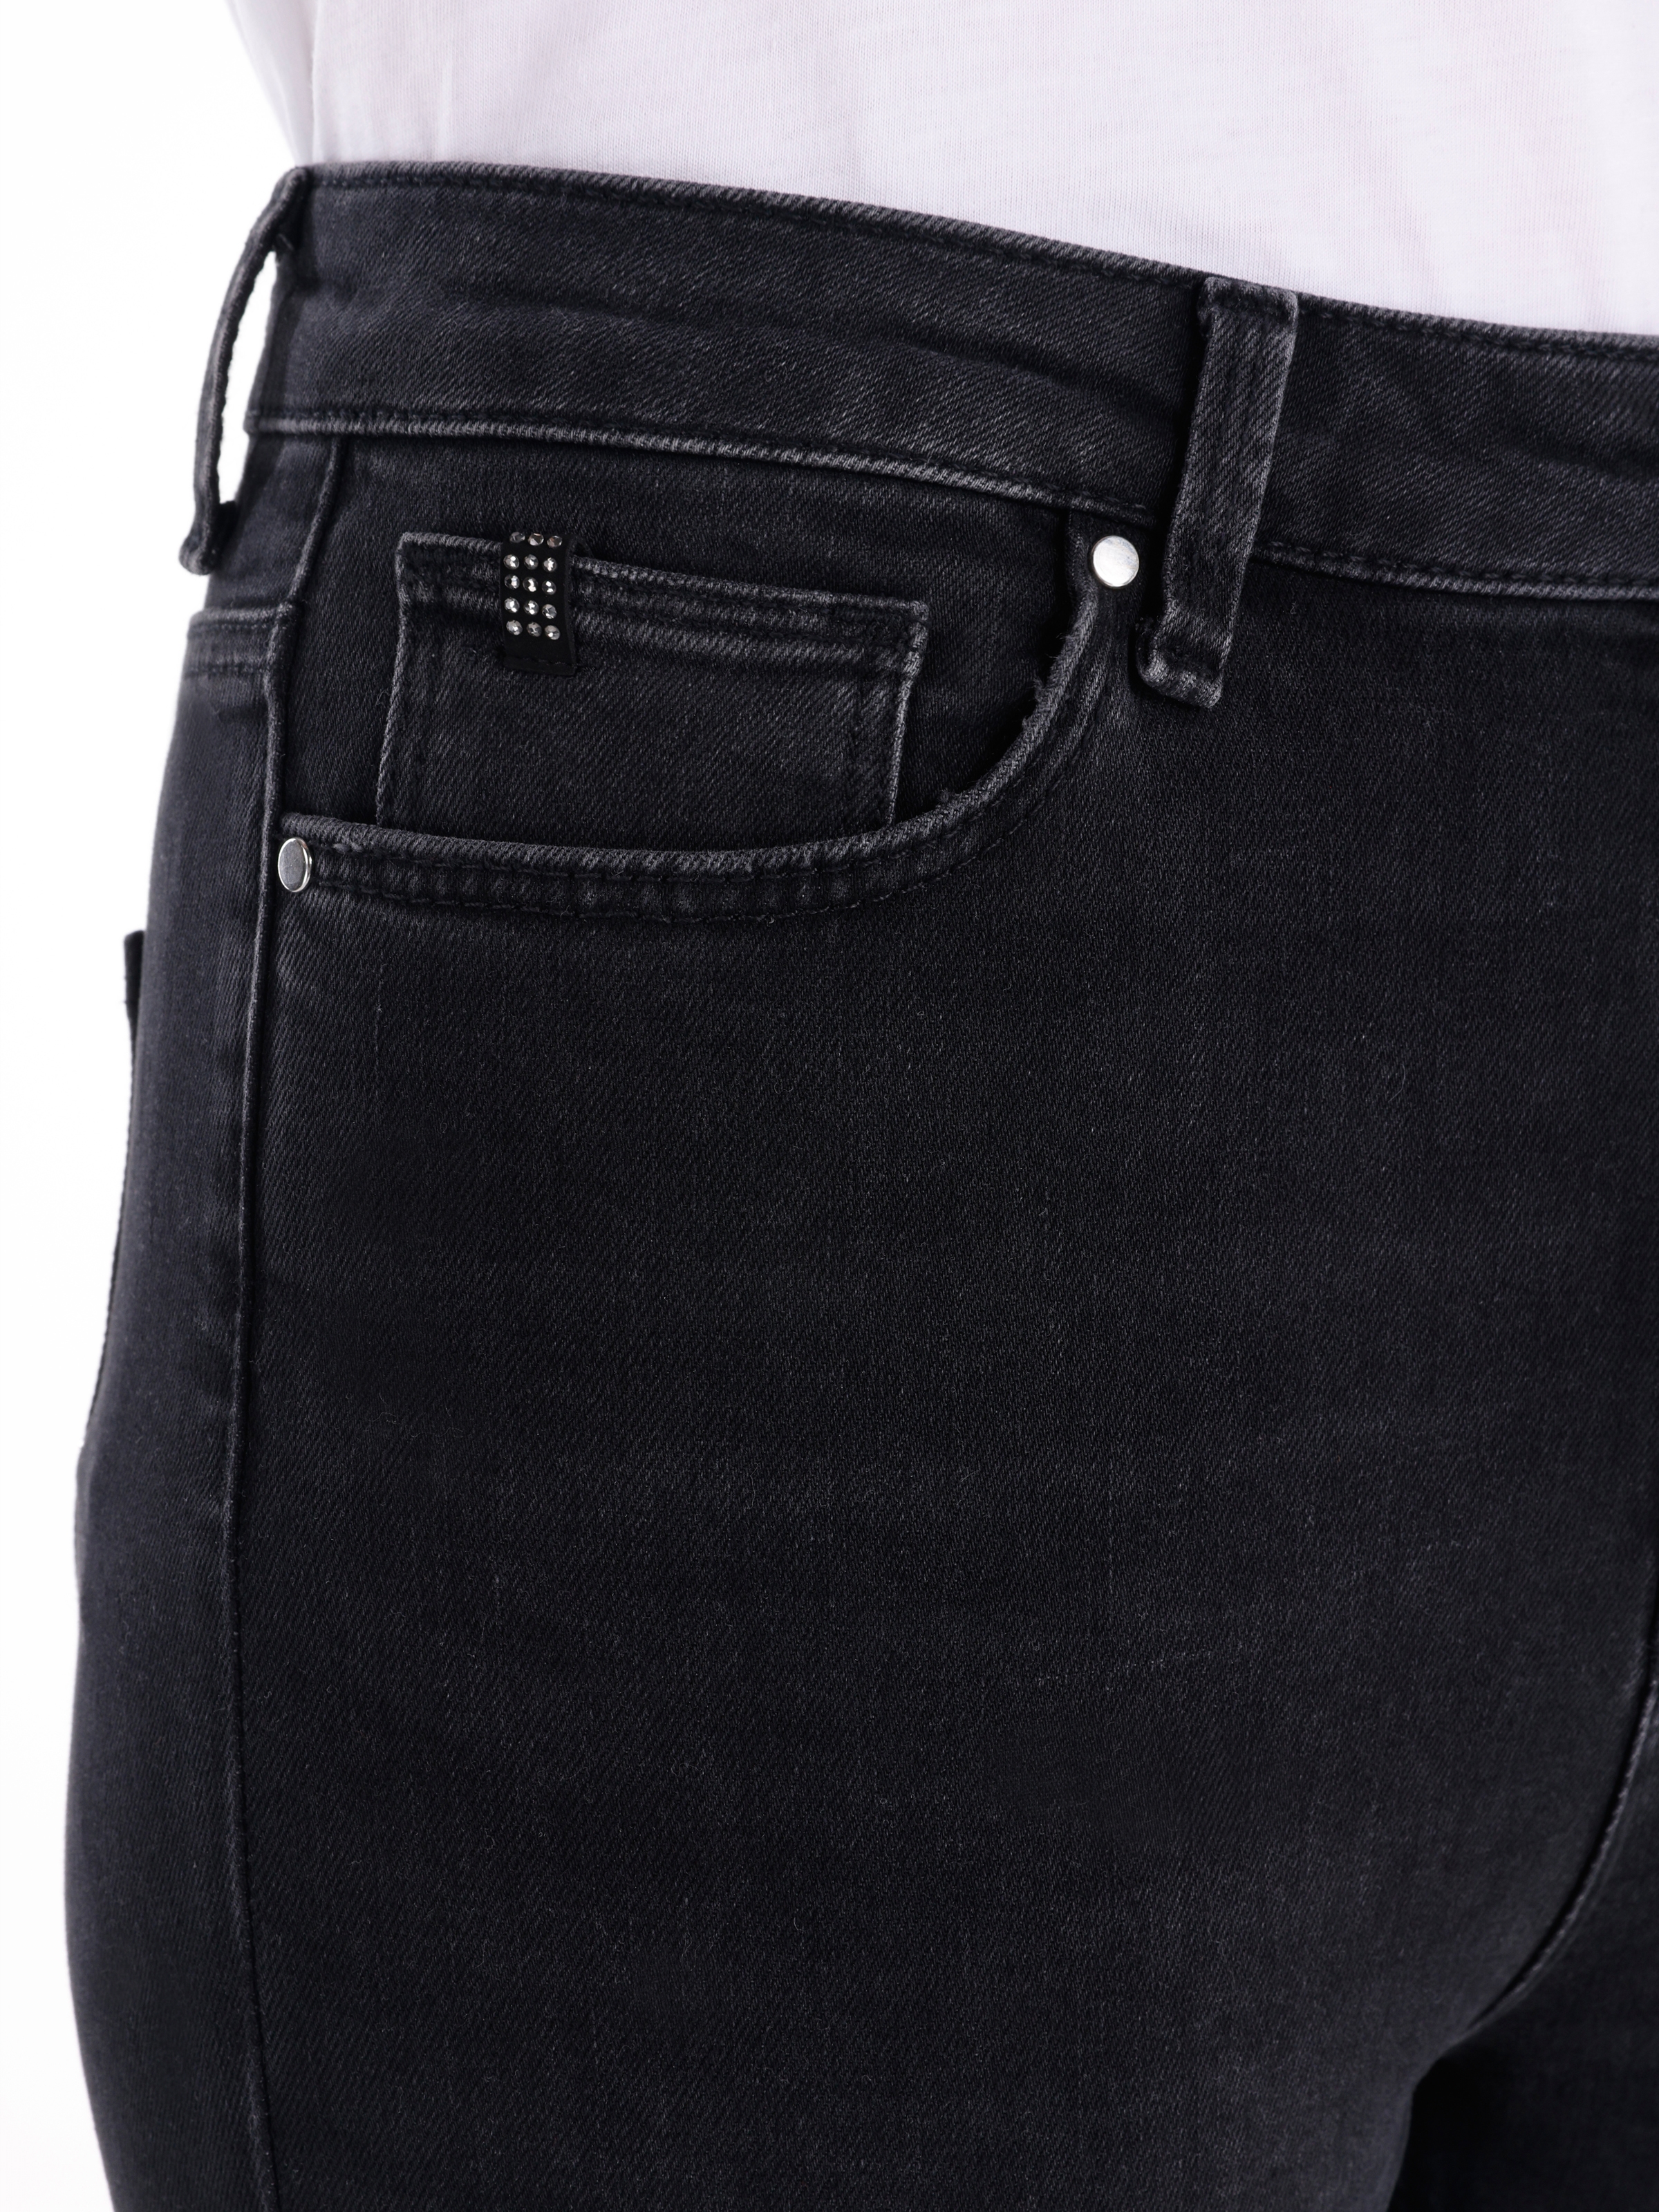 Afișați detalii pentru Pantaloni De Dama Negru Skinny Fit 760 DIANA 